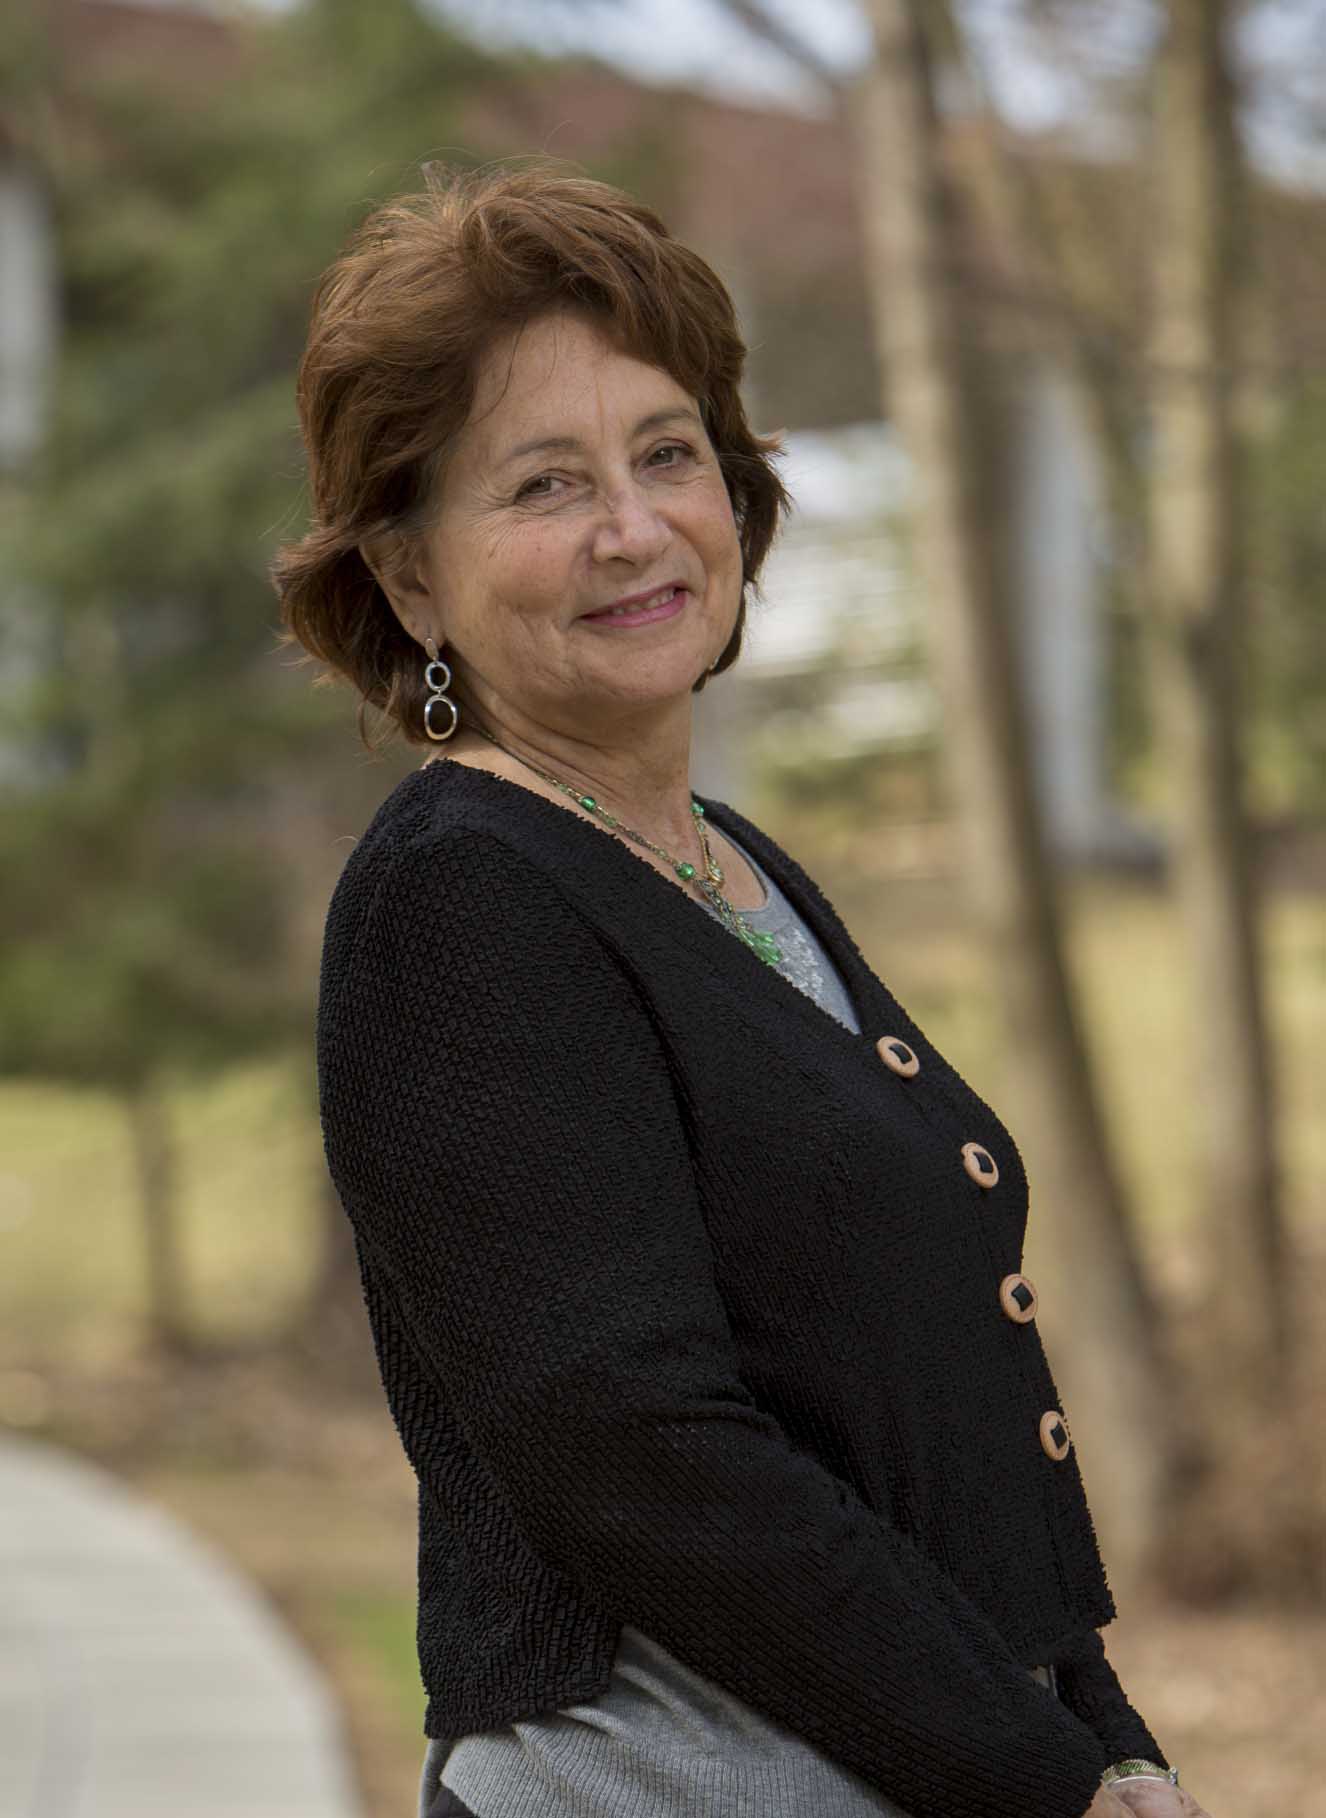 Professor Liz Rosenberg